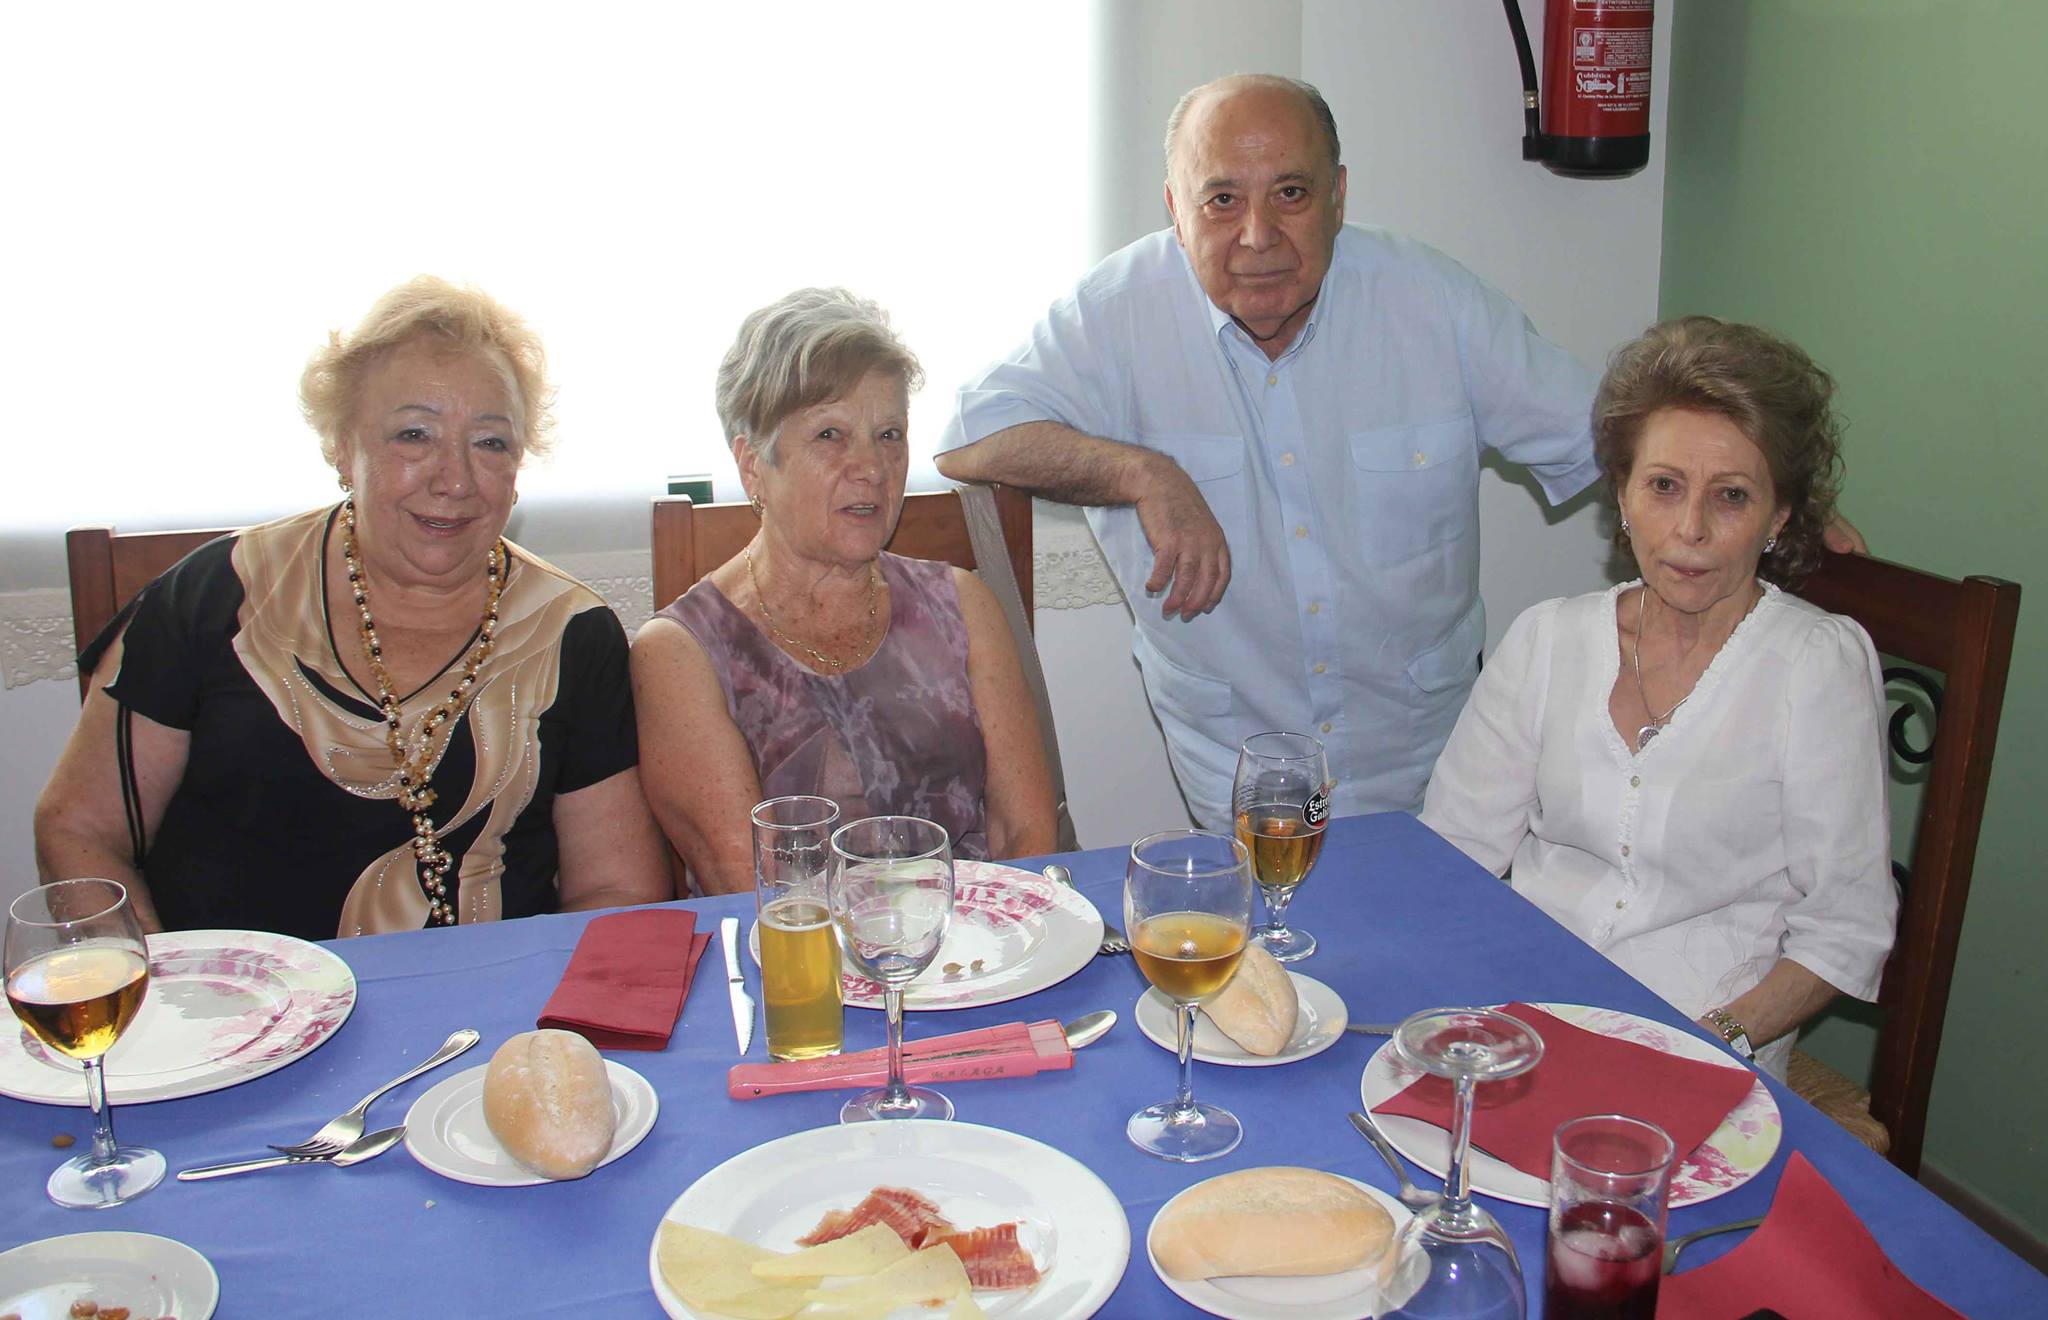 Fotos del Primer reencuentro familia Mellado-Serrano en Cabra.